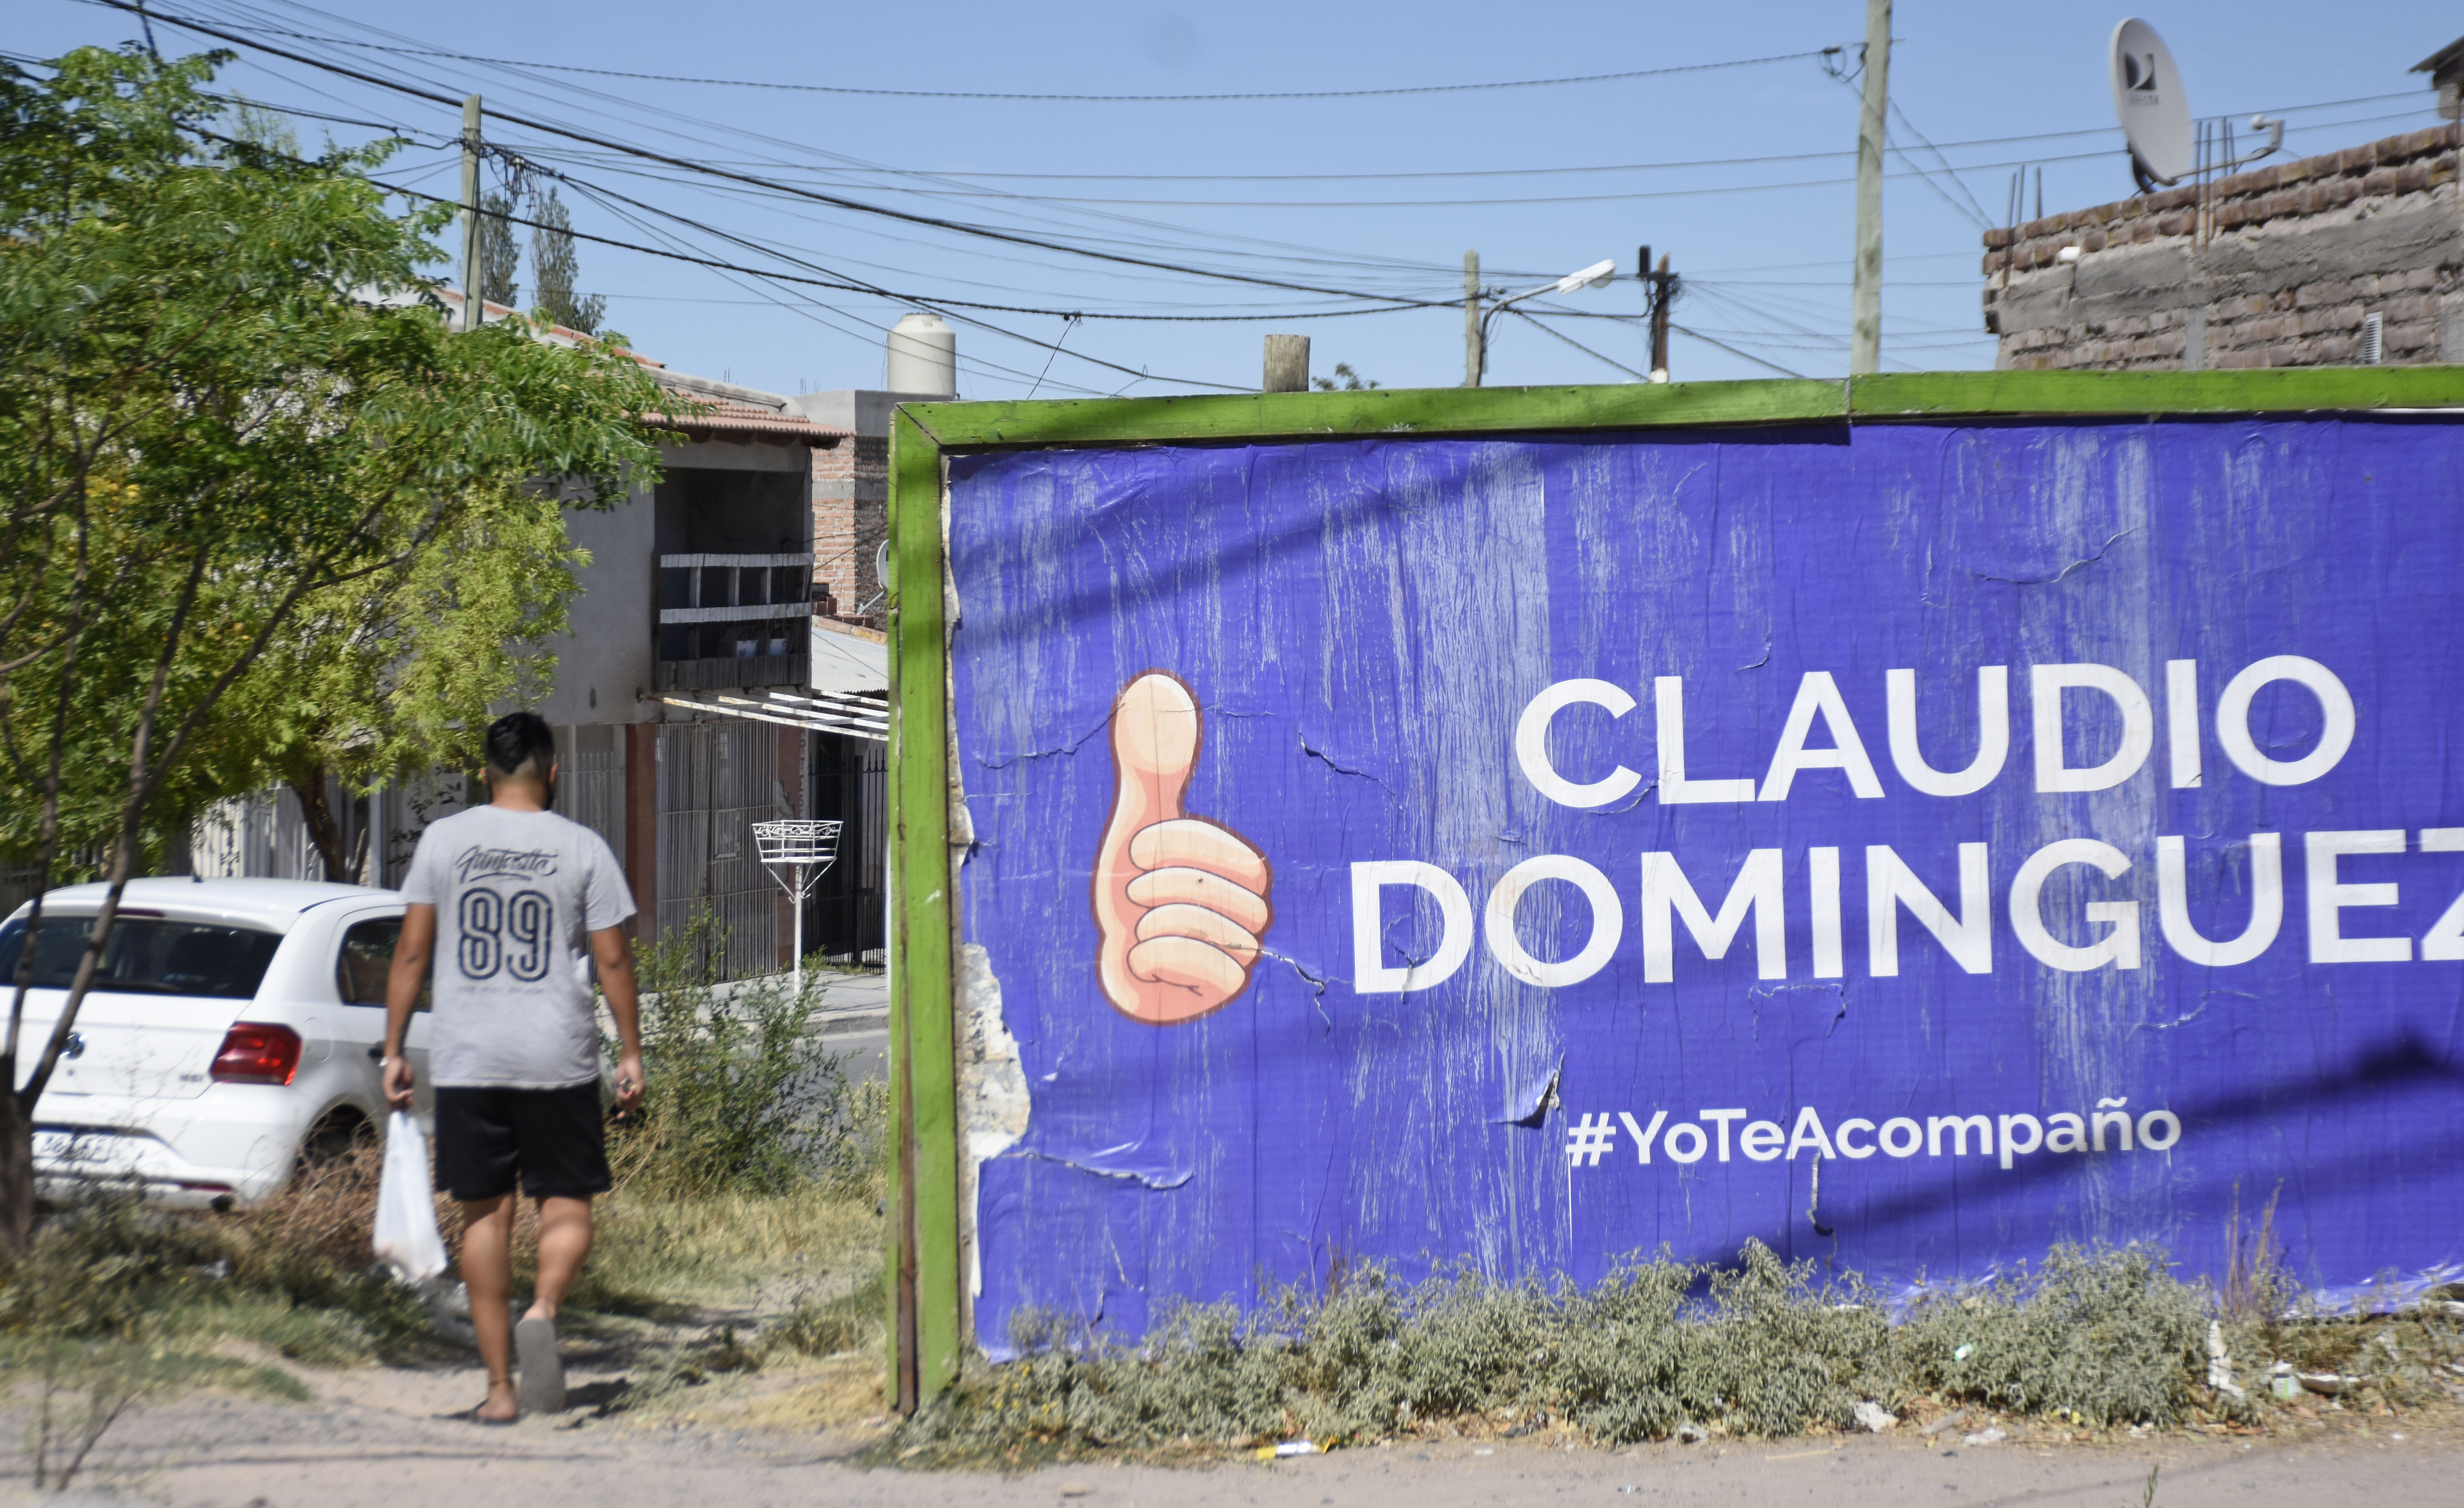 Tras la infracción de la justicia electoral, el candidato volvió a reemplazar los afiches. Foto: Florencia Salto.